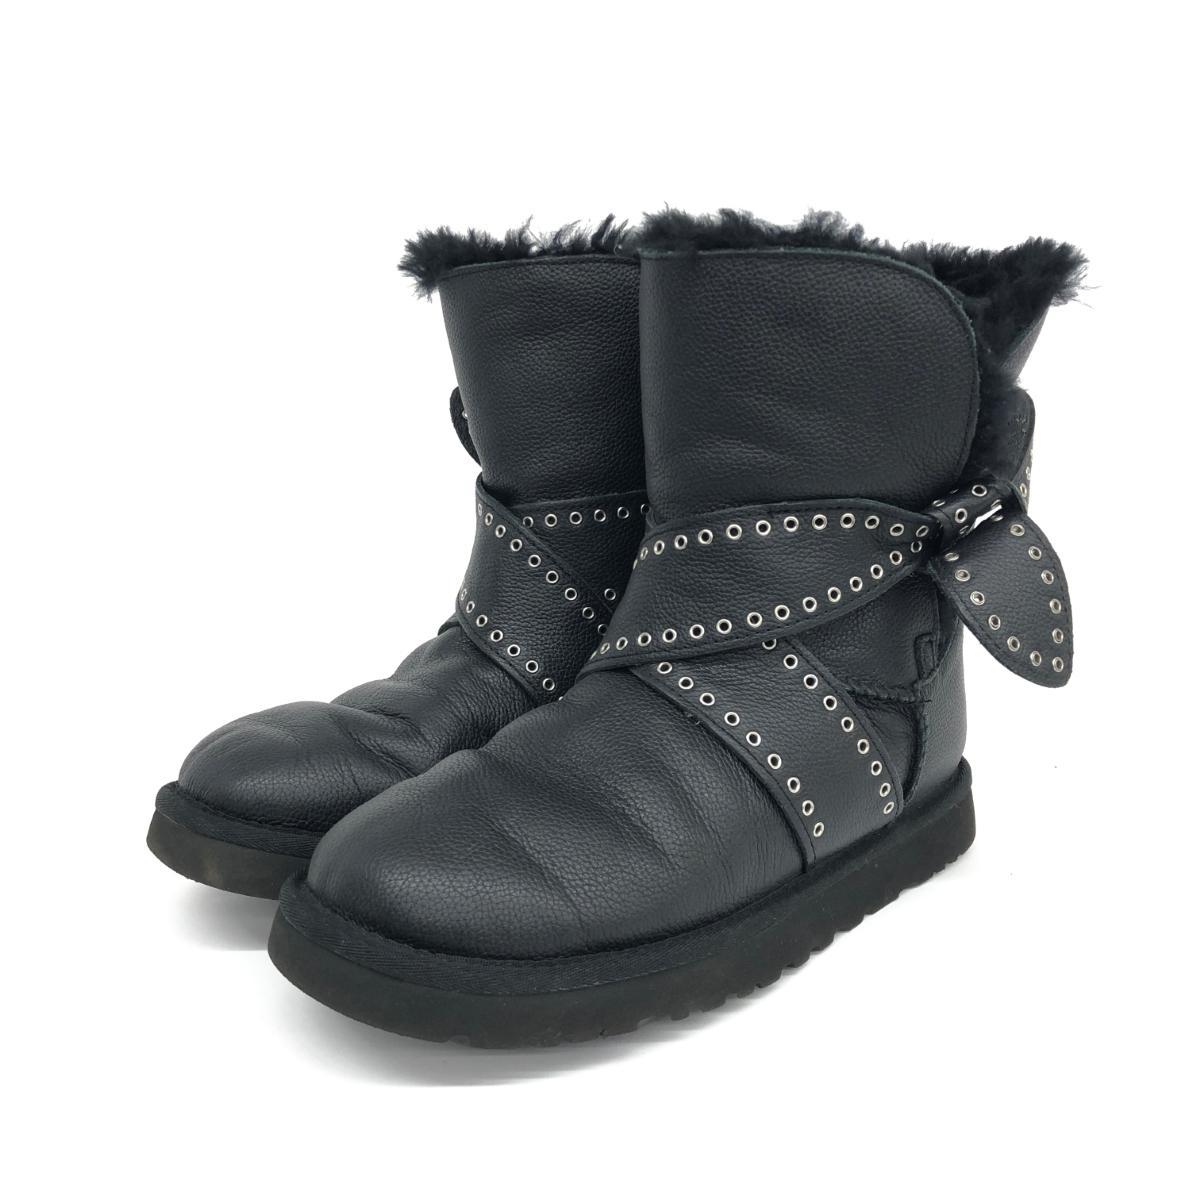 ◆UGG アグ メーベル ブーツ 25◆1016299 ブラック レザー ムートン レディース 靴 シューズ ブーティー boots